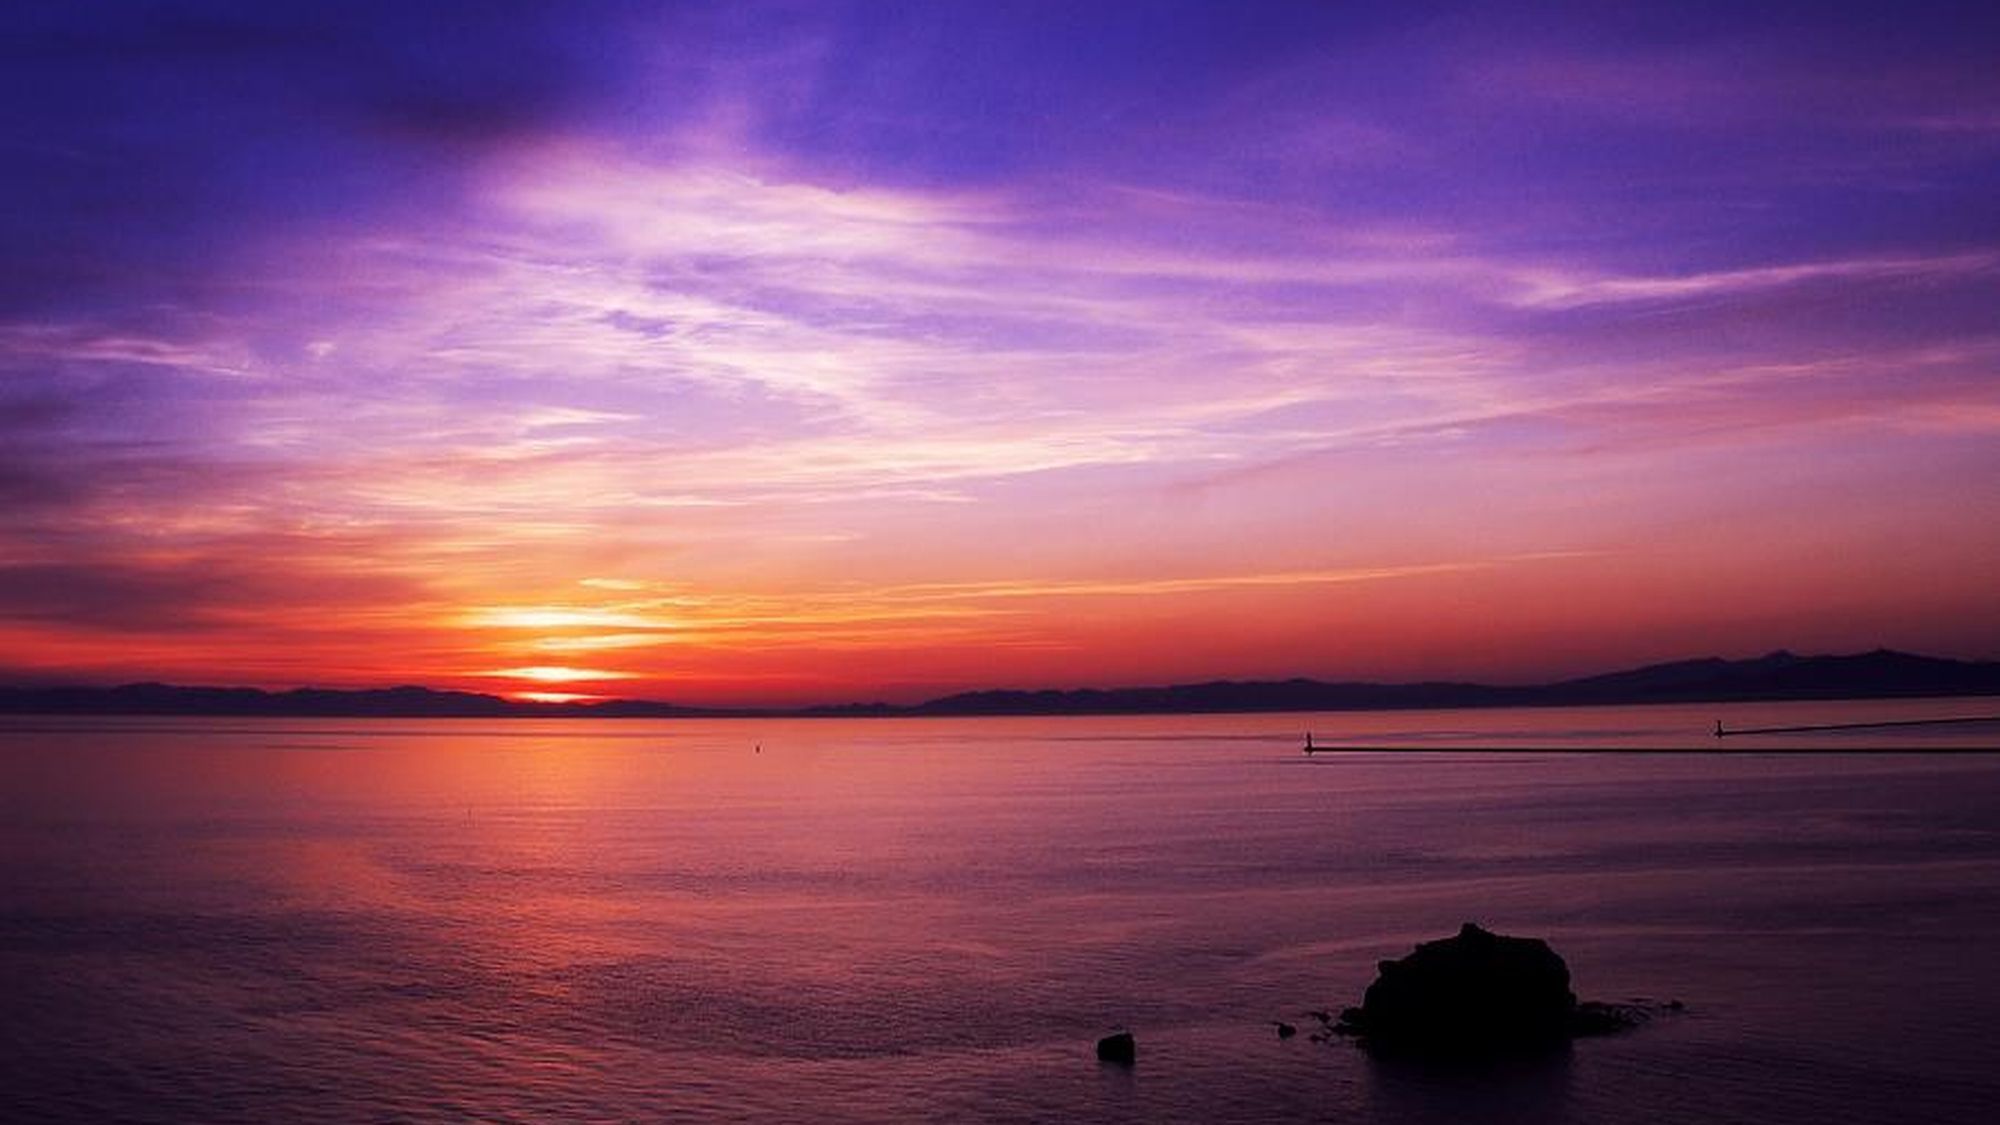 【絵鞆岬】美しい夕日を見られるスポットとして有名な観光地